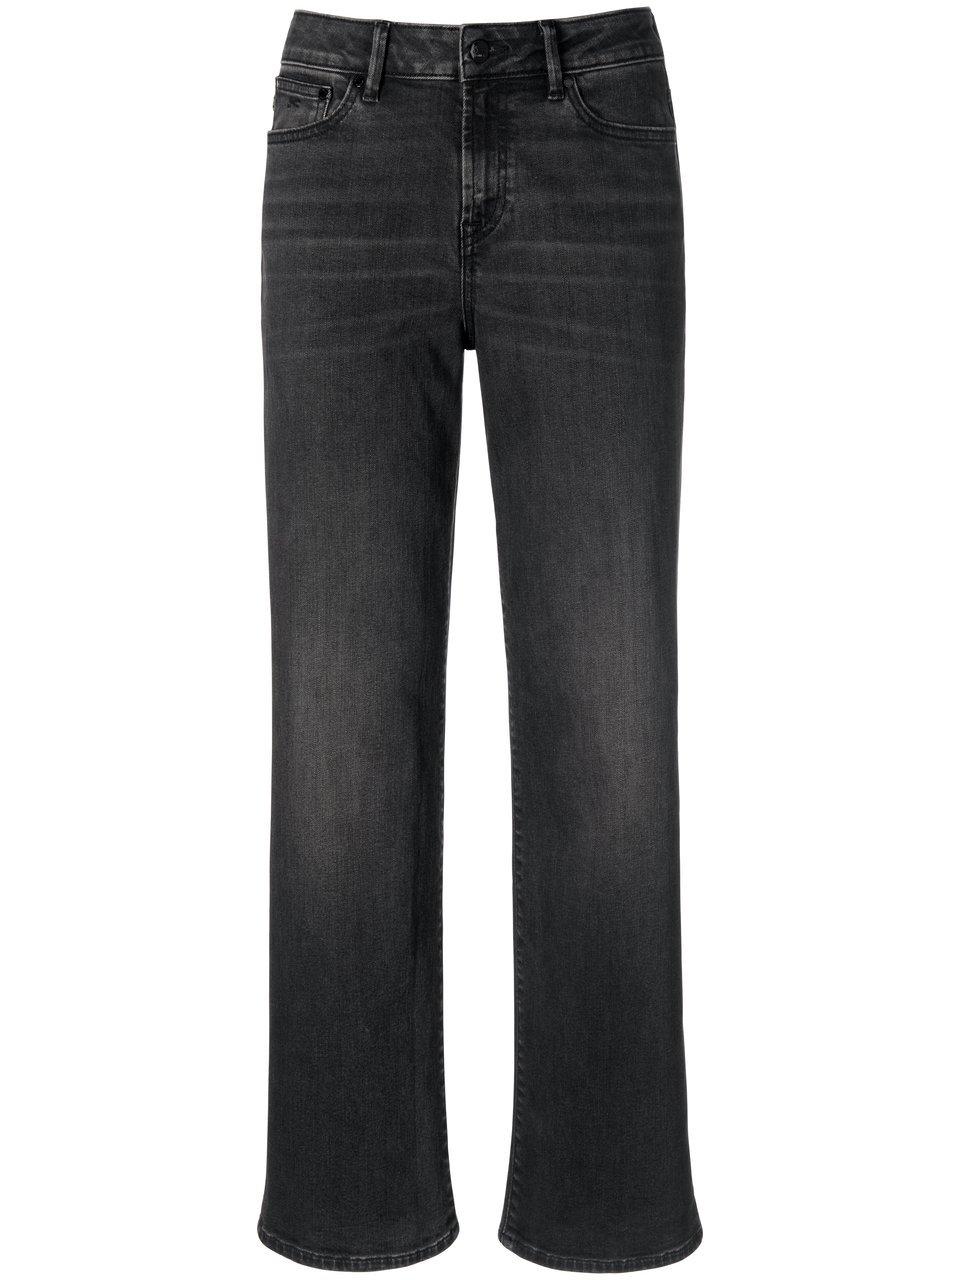 Jeans in inch-lengte 30 Van Denham zwart